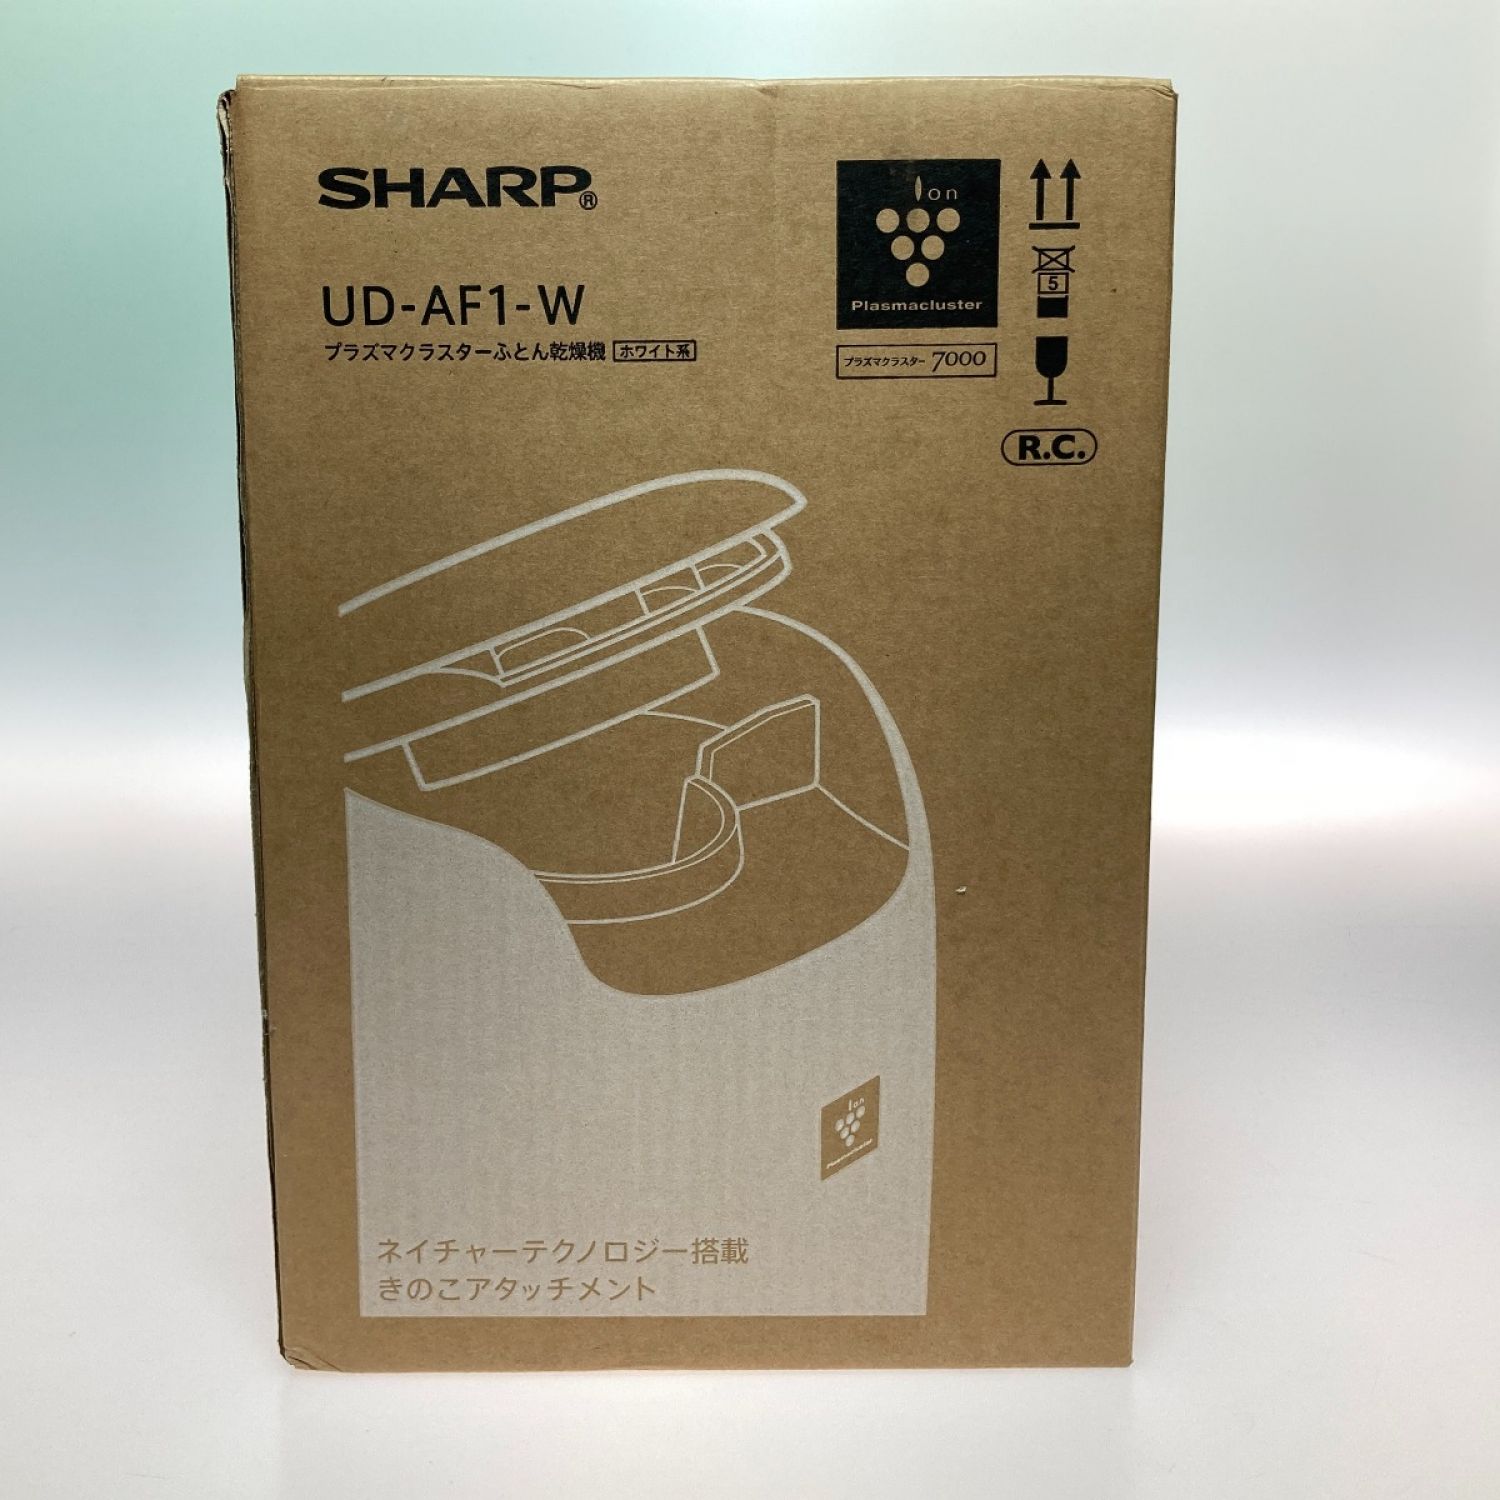 中古】 SHARP シャープ プラズマクラスターふとん乾燥機 UD-AF1-W